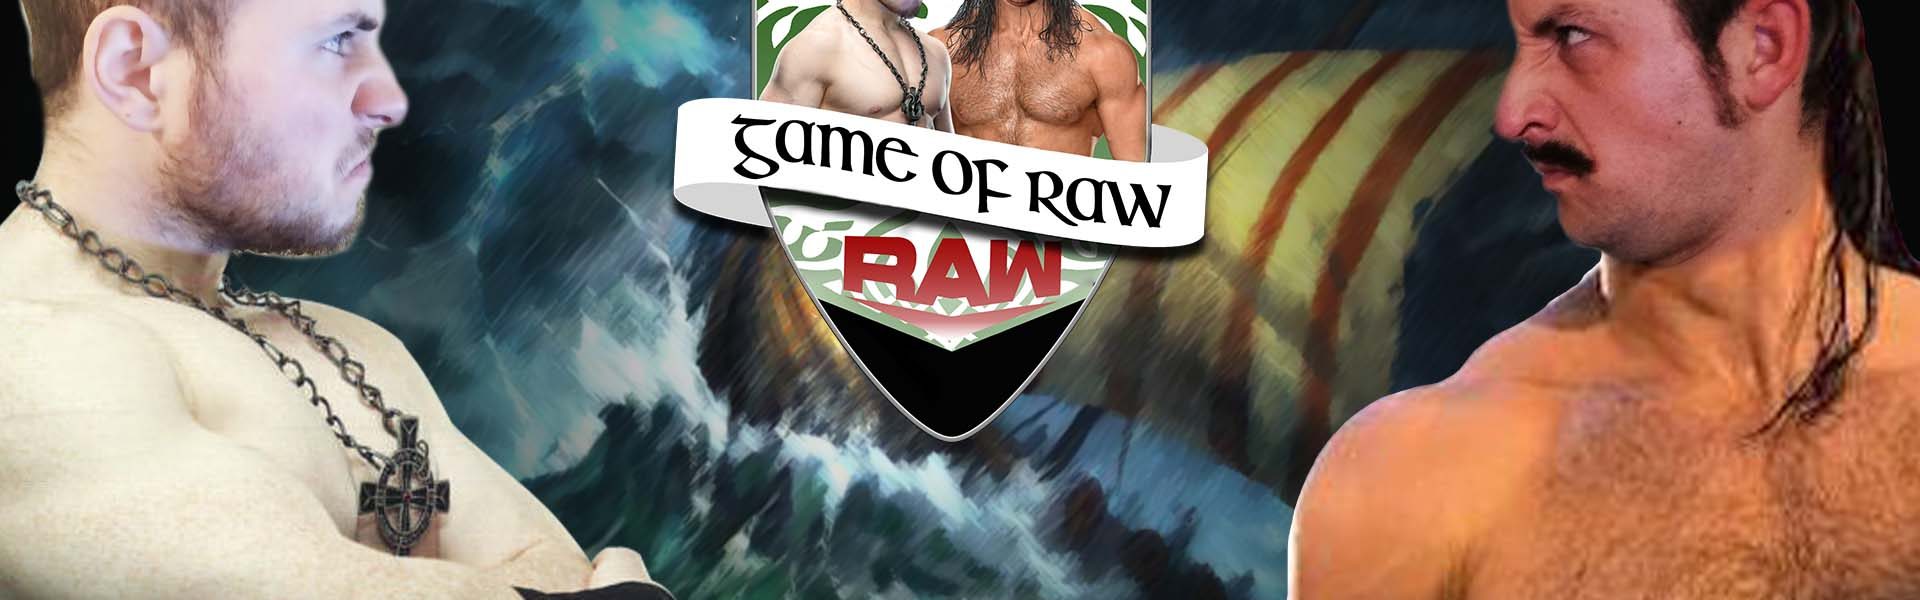 Il rito oscuro di Alexa Bliss - Game Of RAW Podcast Ep. 3